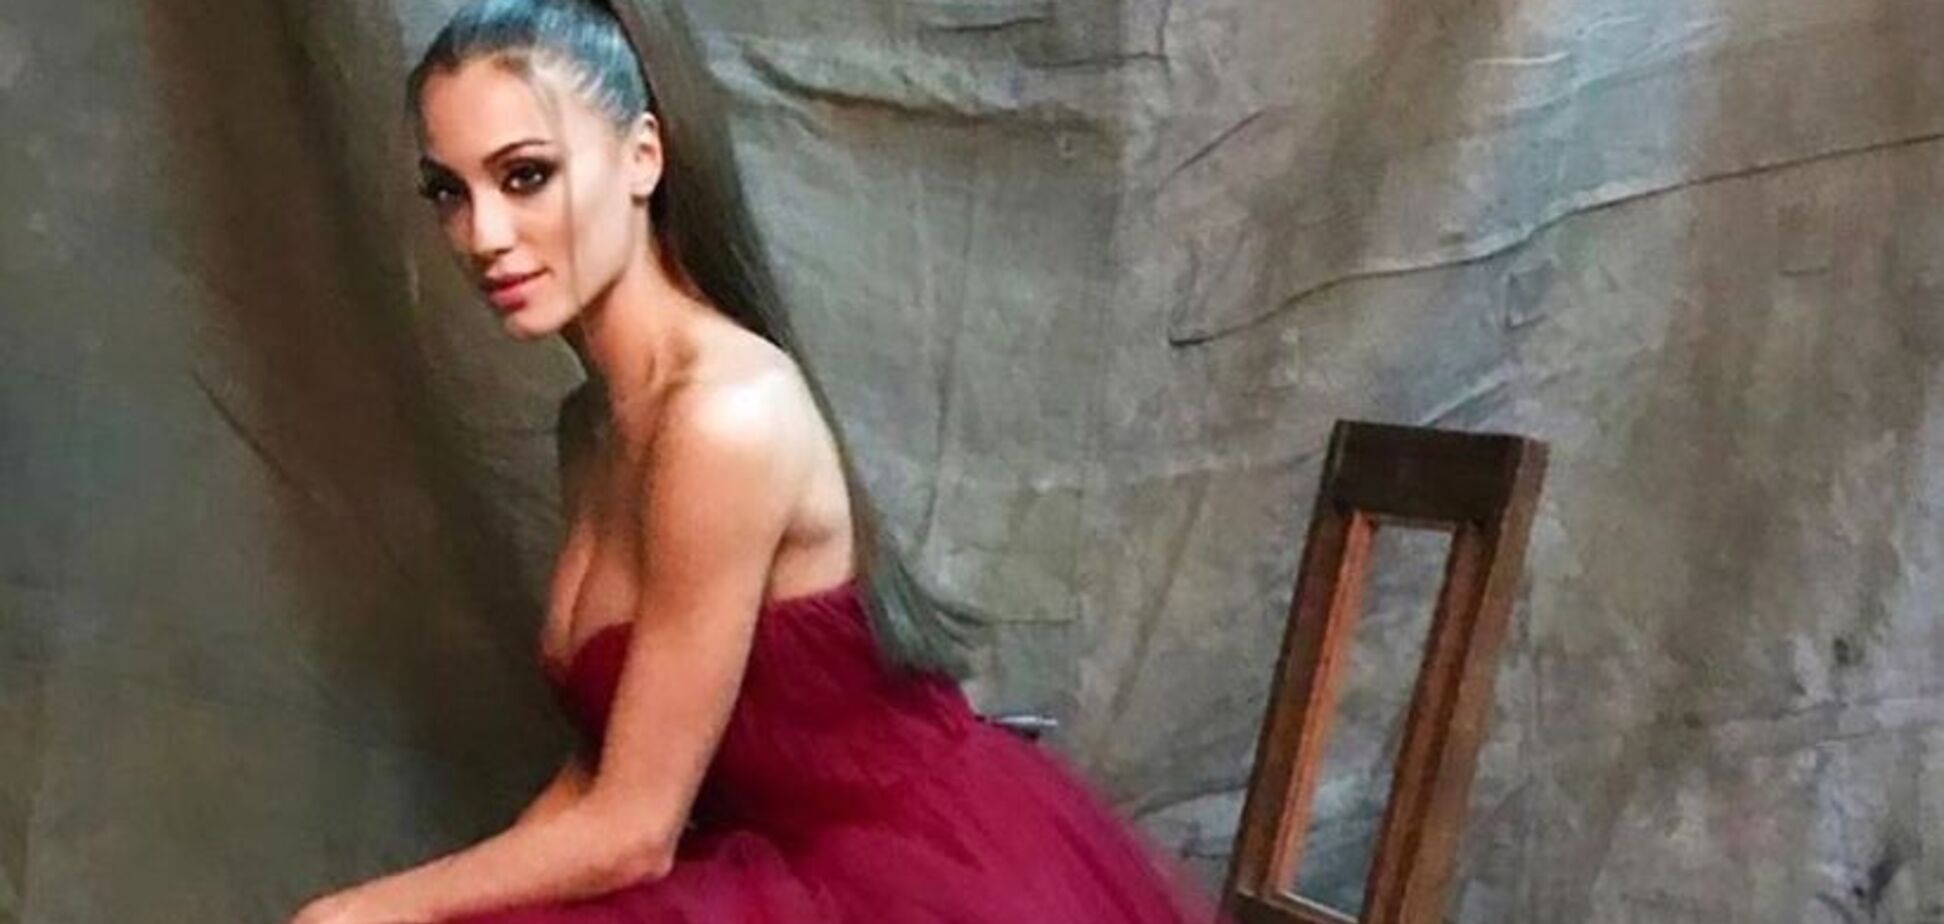 Представниця України на 'Міс Світу' натякнула на продажність конкурсу